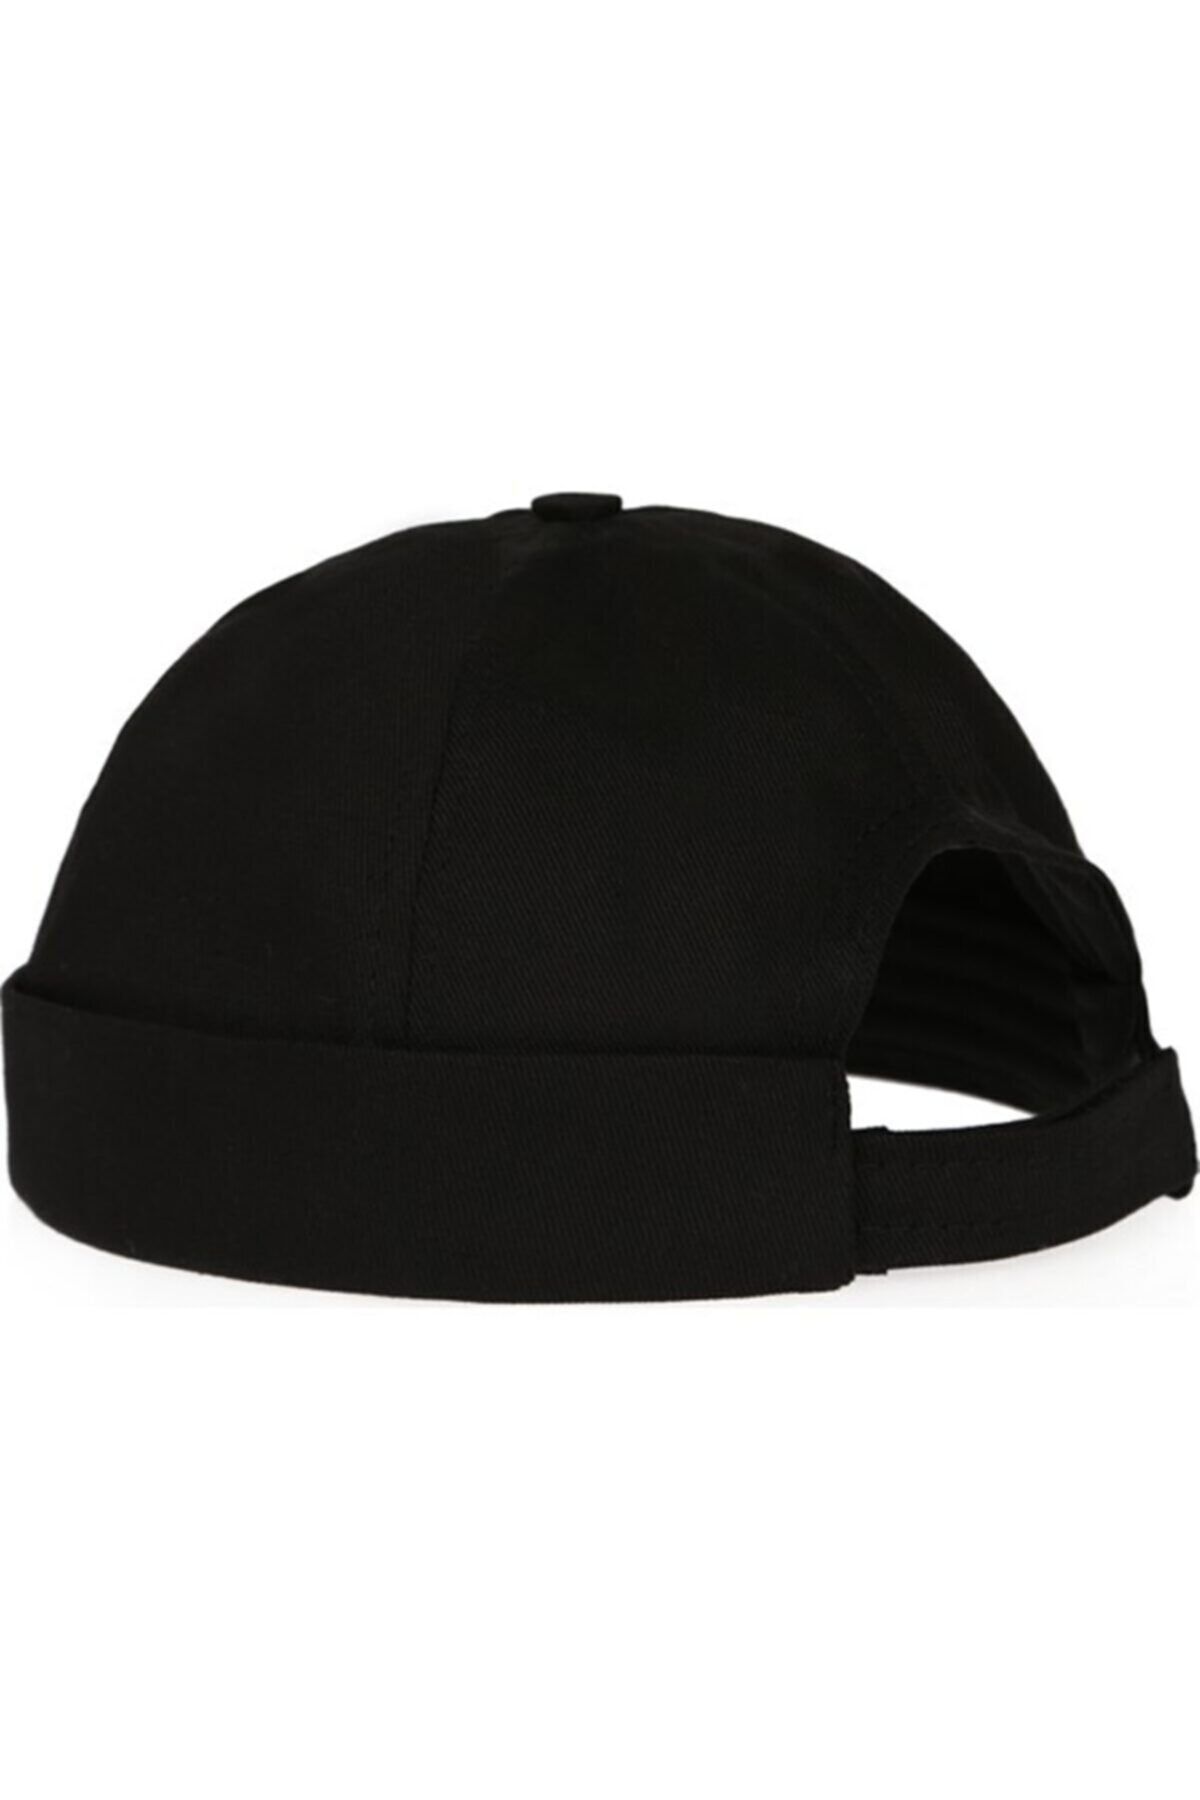 BoboStores Ayarlanabilir Yazlık Takke Şapka Retro Siperliksiz Şapka